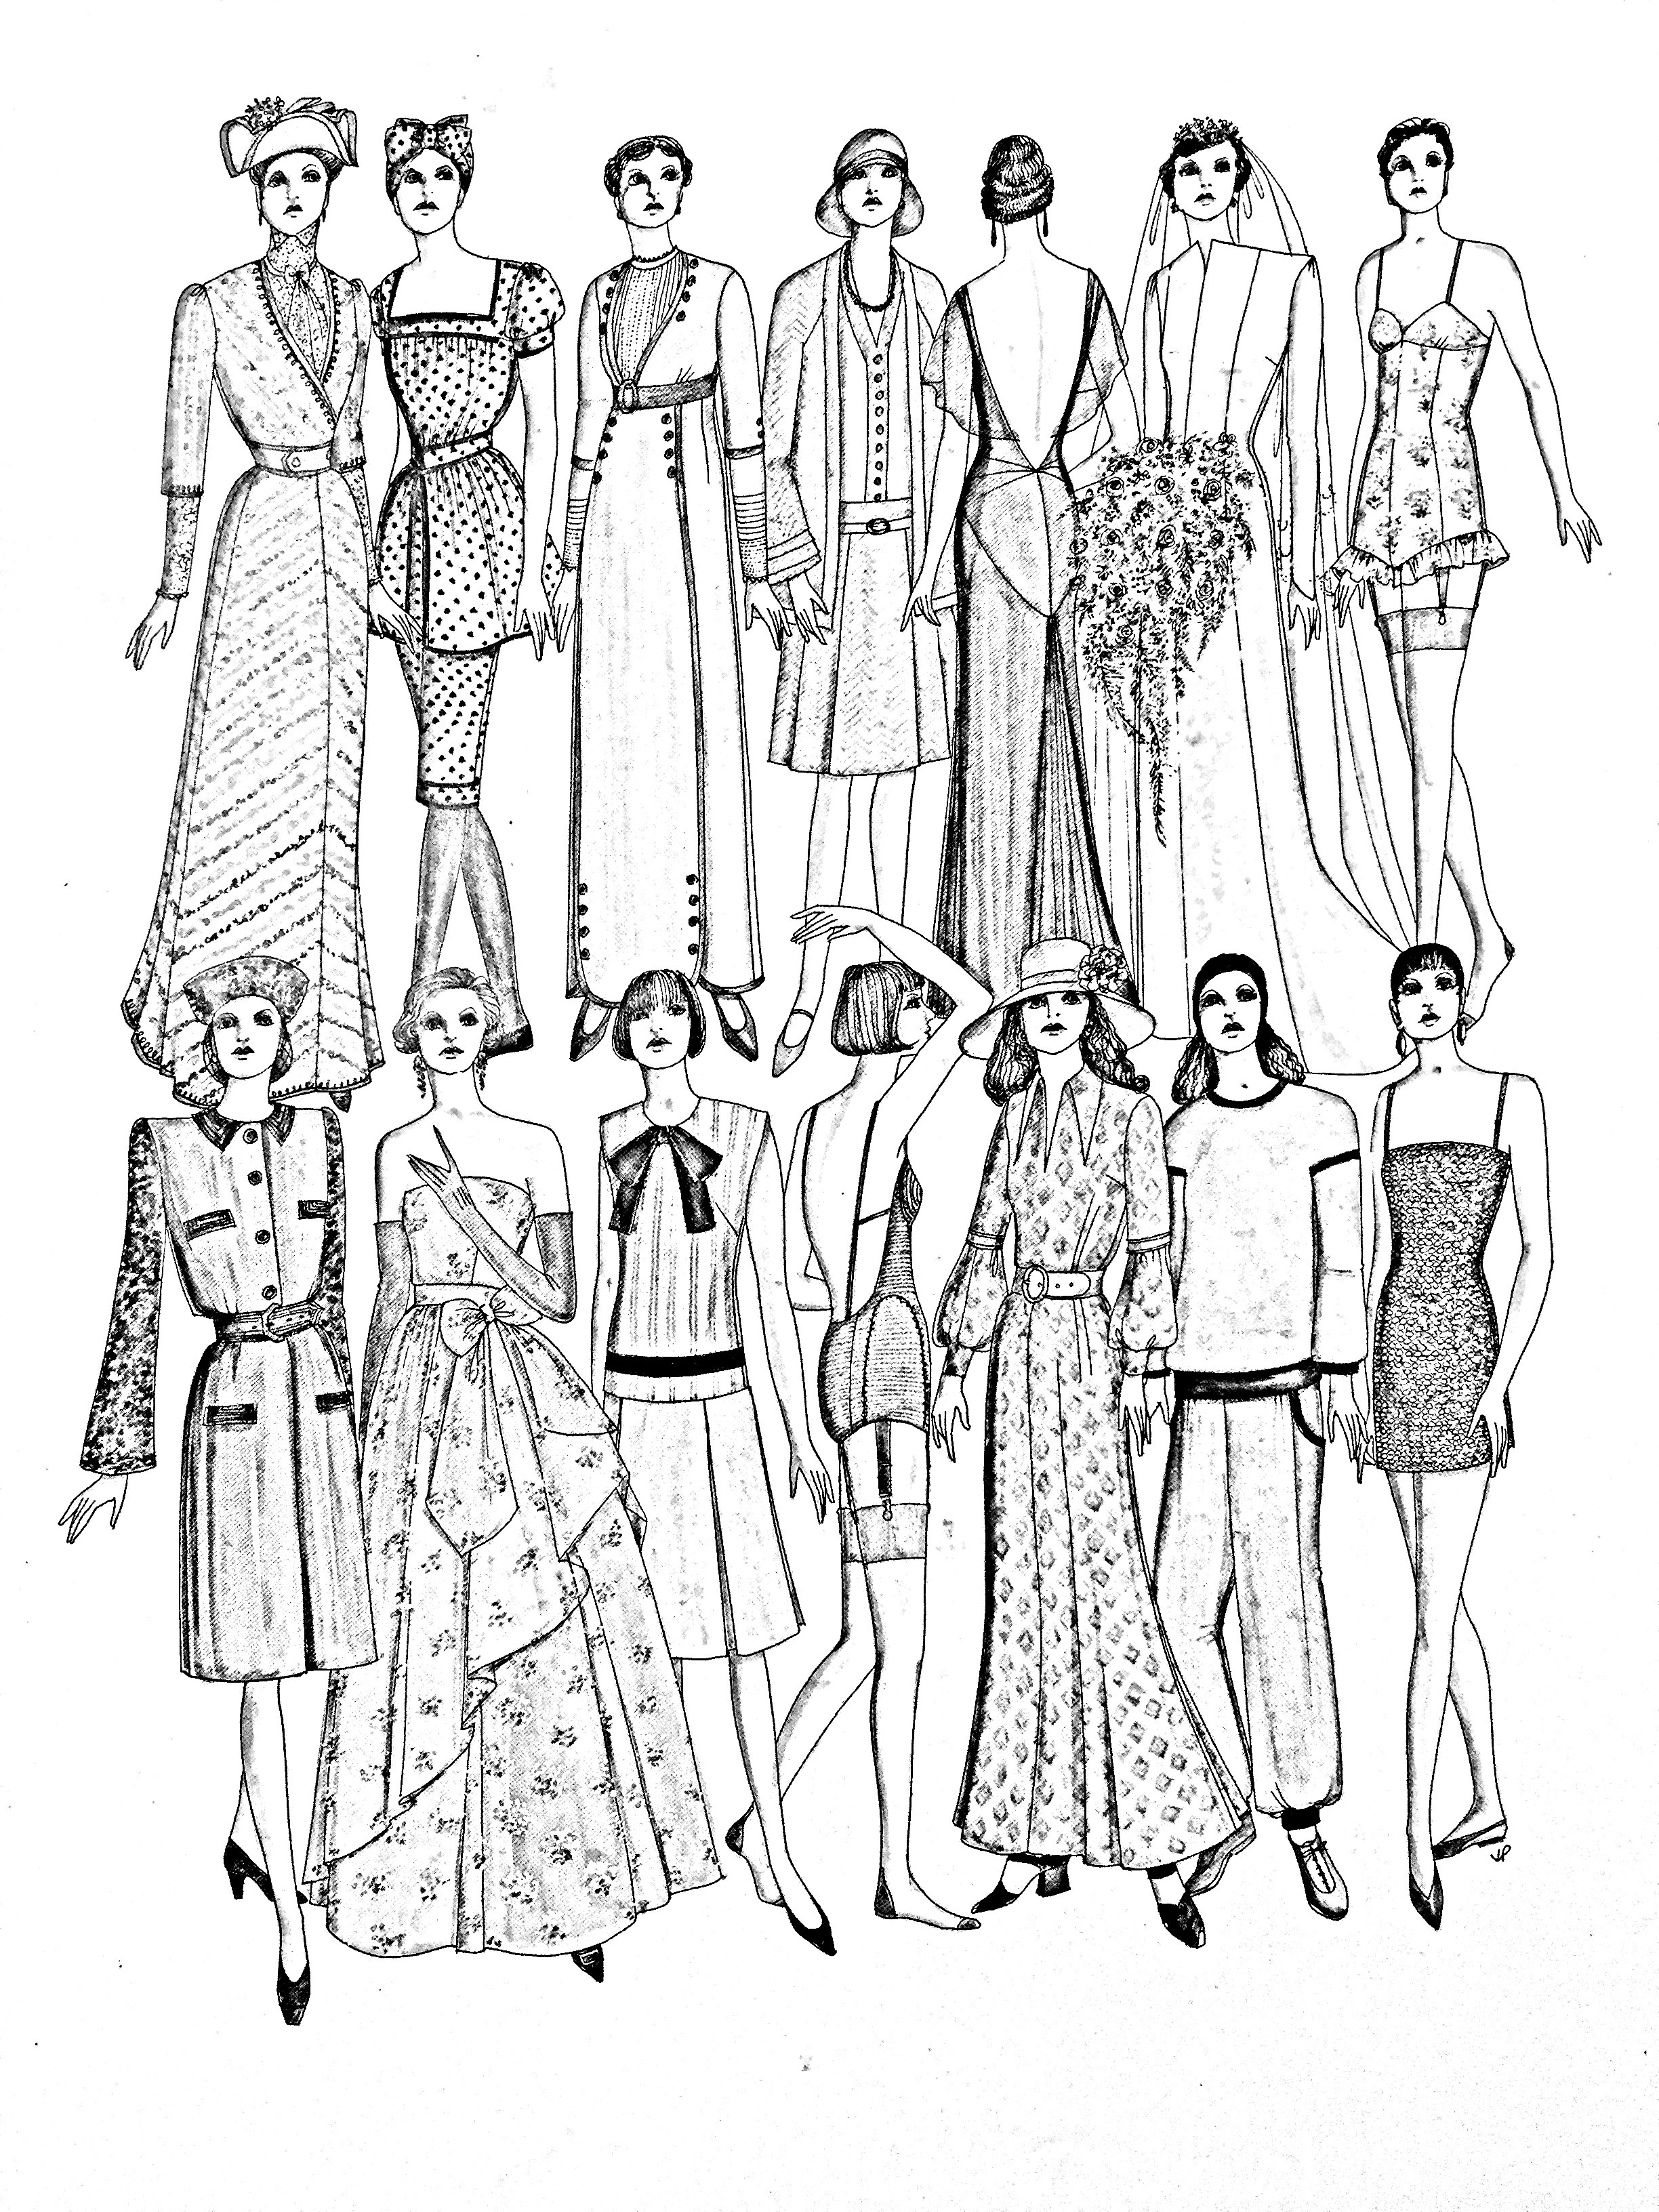 Coloração inspirada numa página do livro Fashion in the 20th Century, de John Peacock.